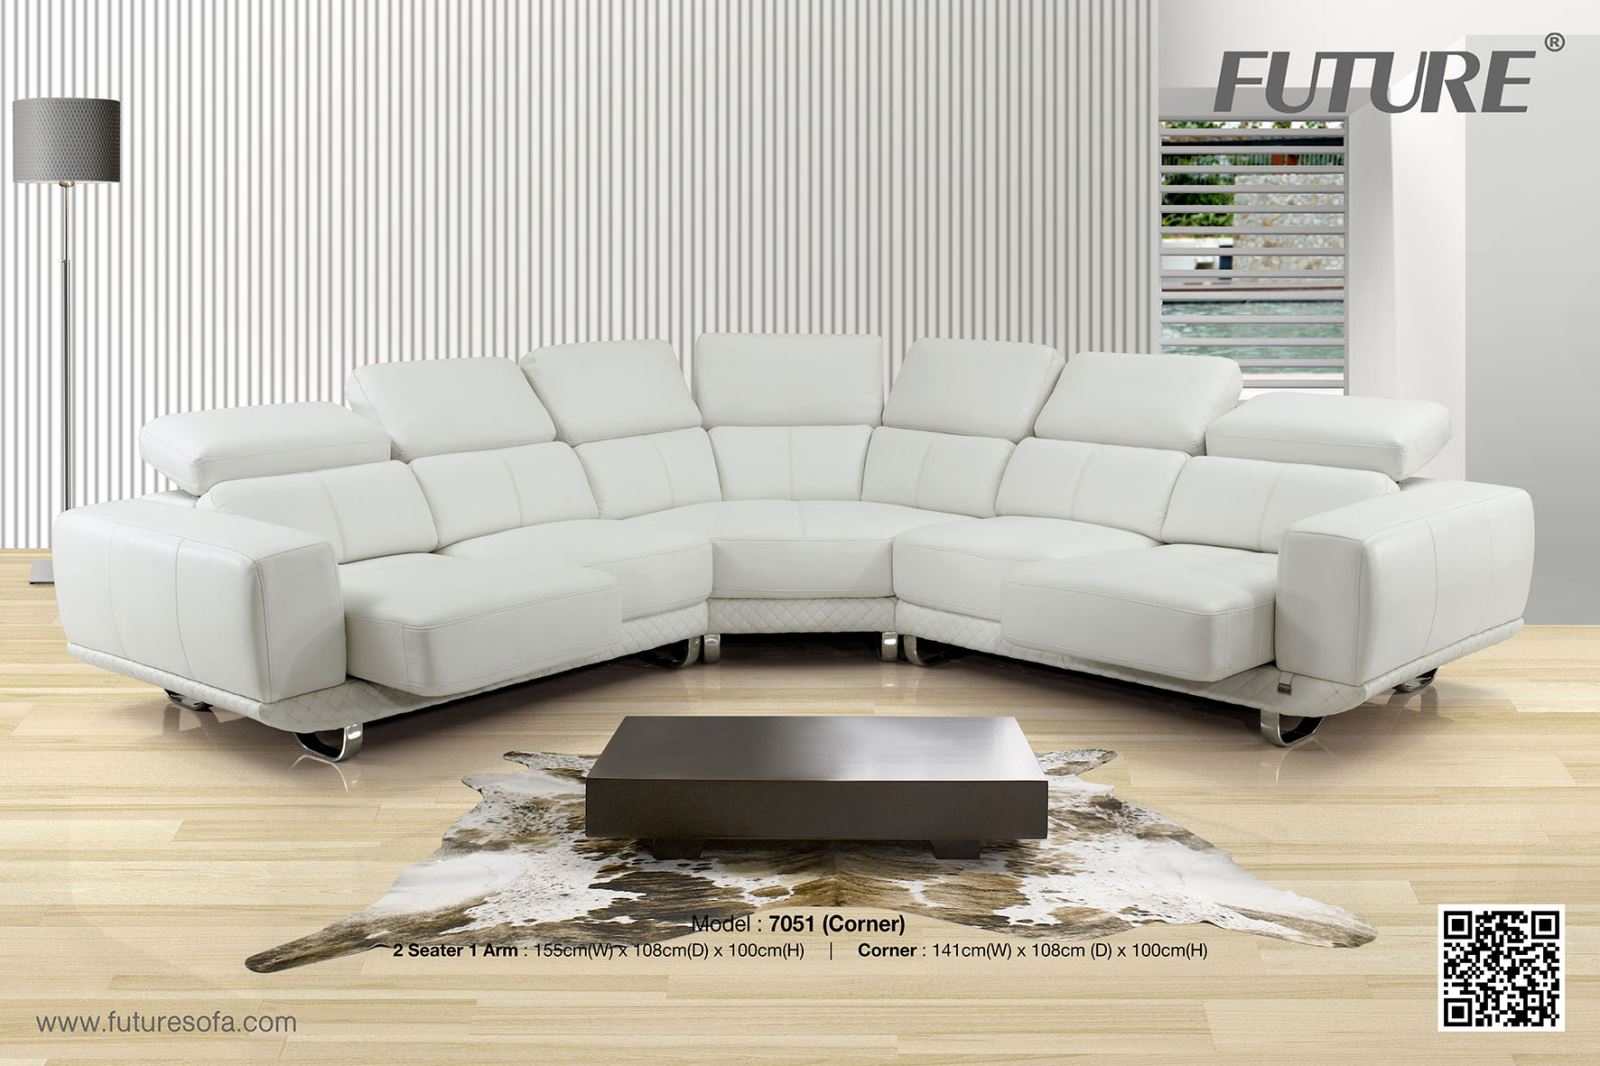 Gợi ý chọn sofa phòng khách cho từng kiểu không gian - Ảnh 2